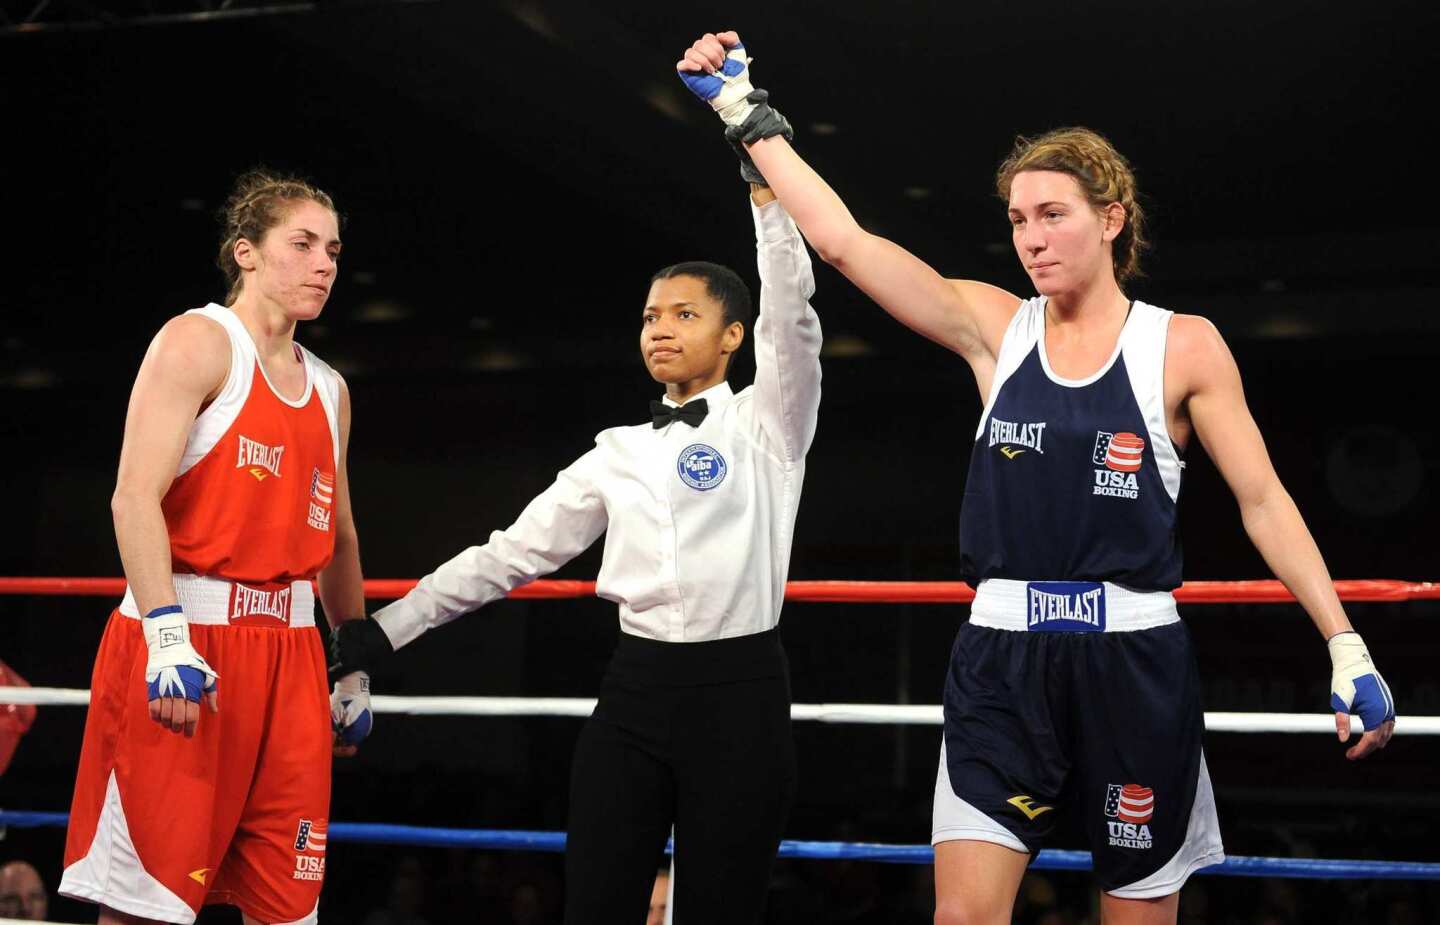 Women's boxing trials